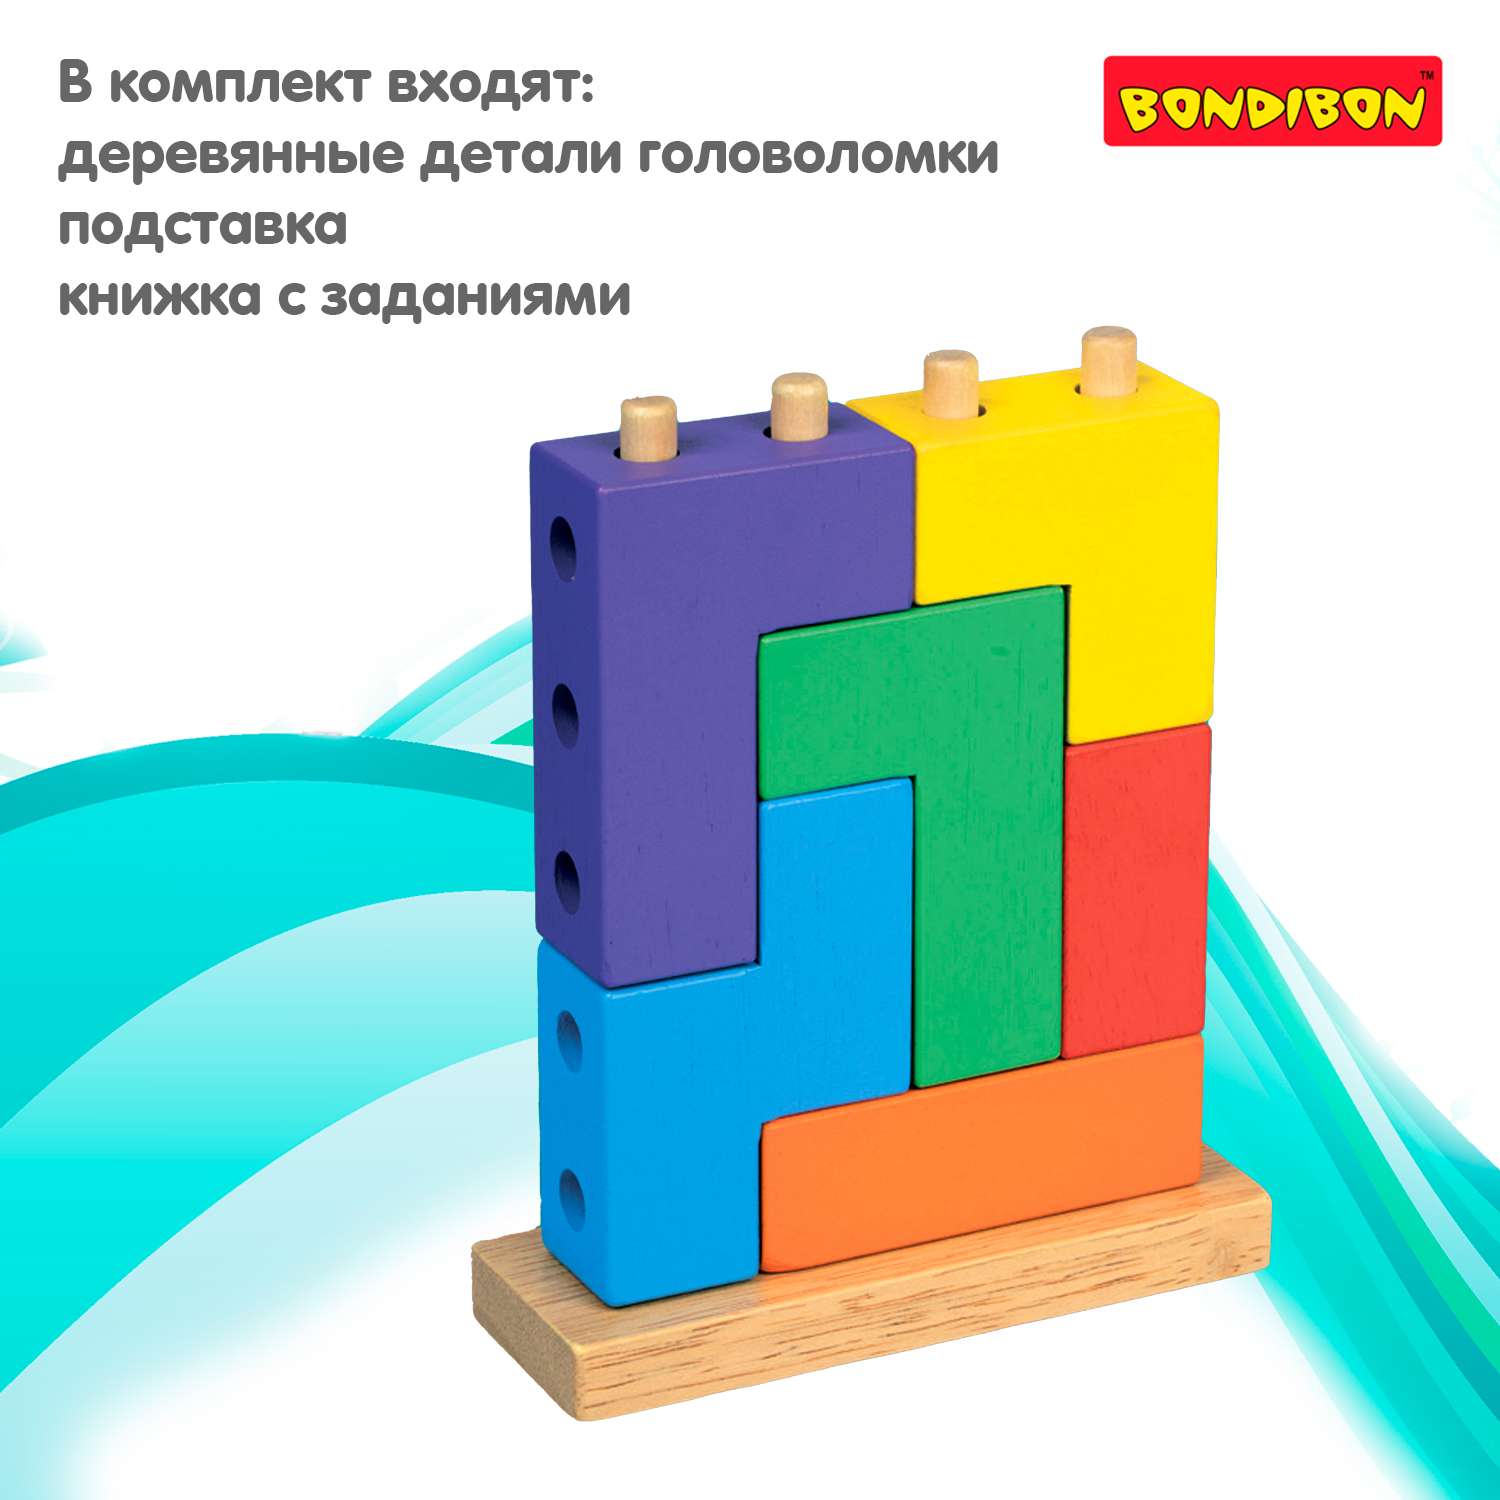 Логическая игра-головоломка BONDIBON из дерева для дошкольников Четрис 48 заданий серия Бондилогика - фото 3